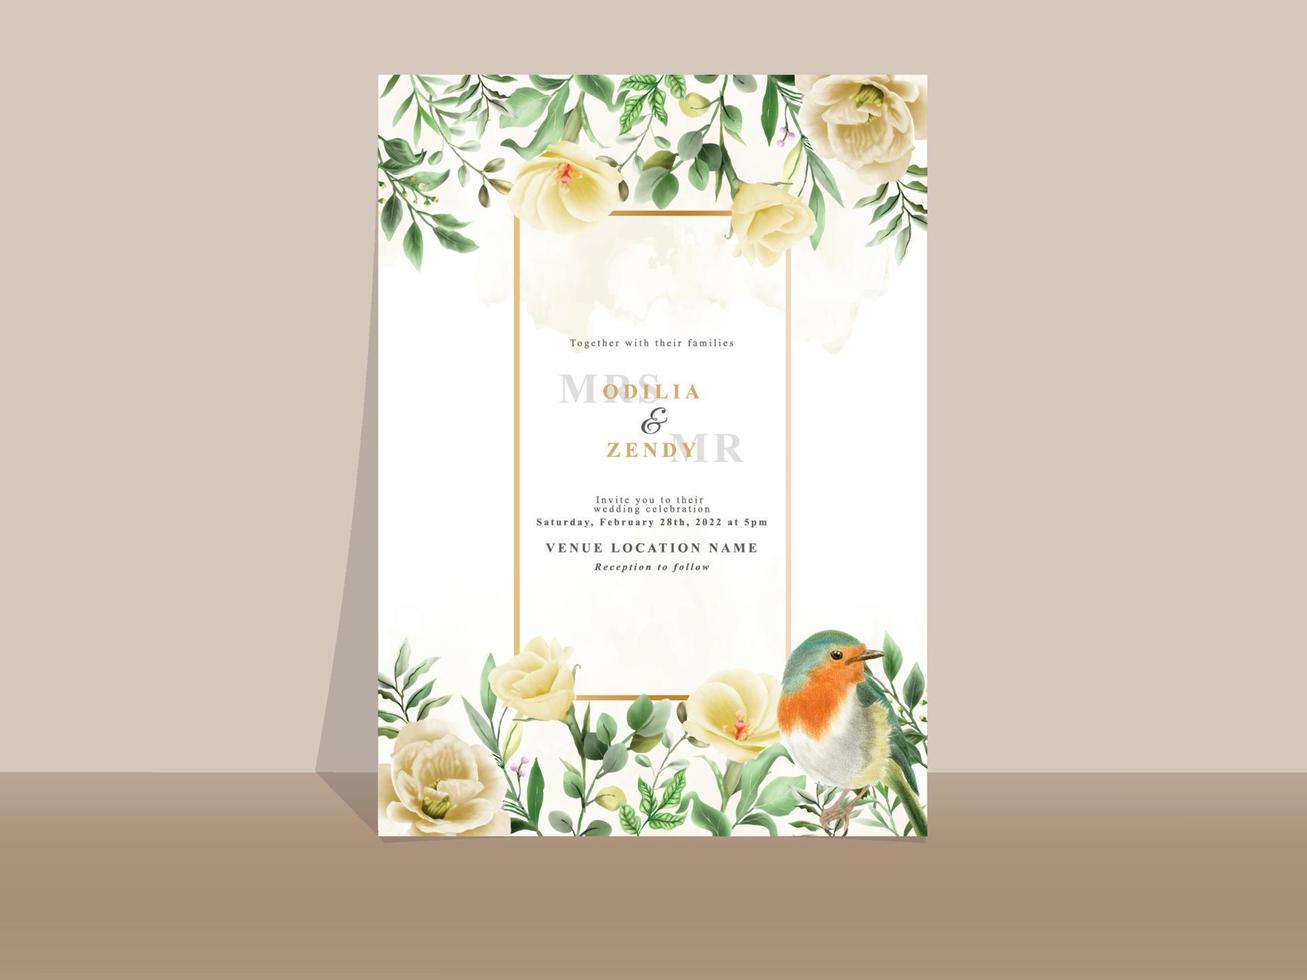 élégante carte d'invitation de mariage floral jaune et orange vecteur